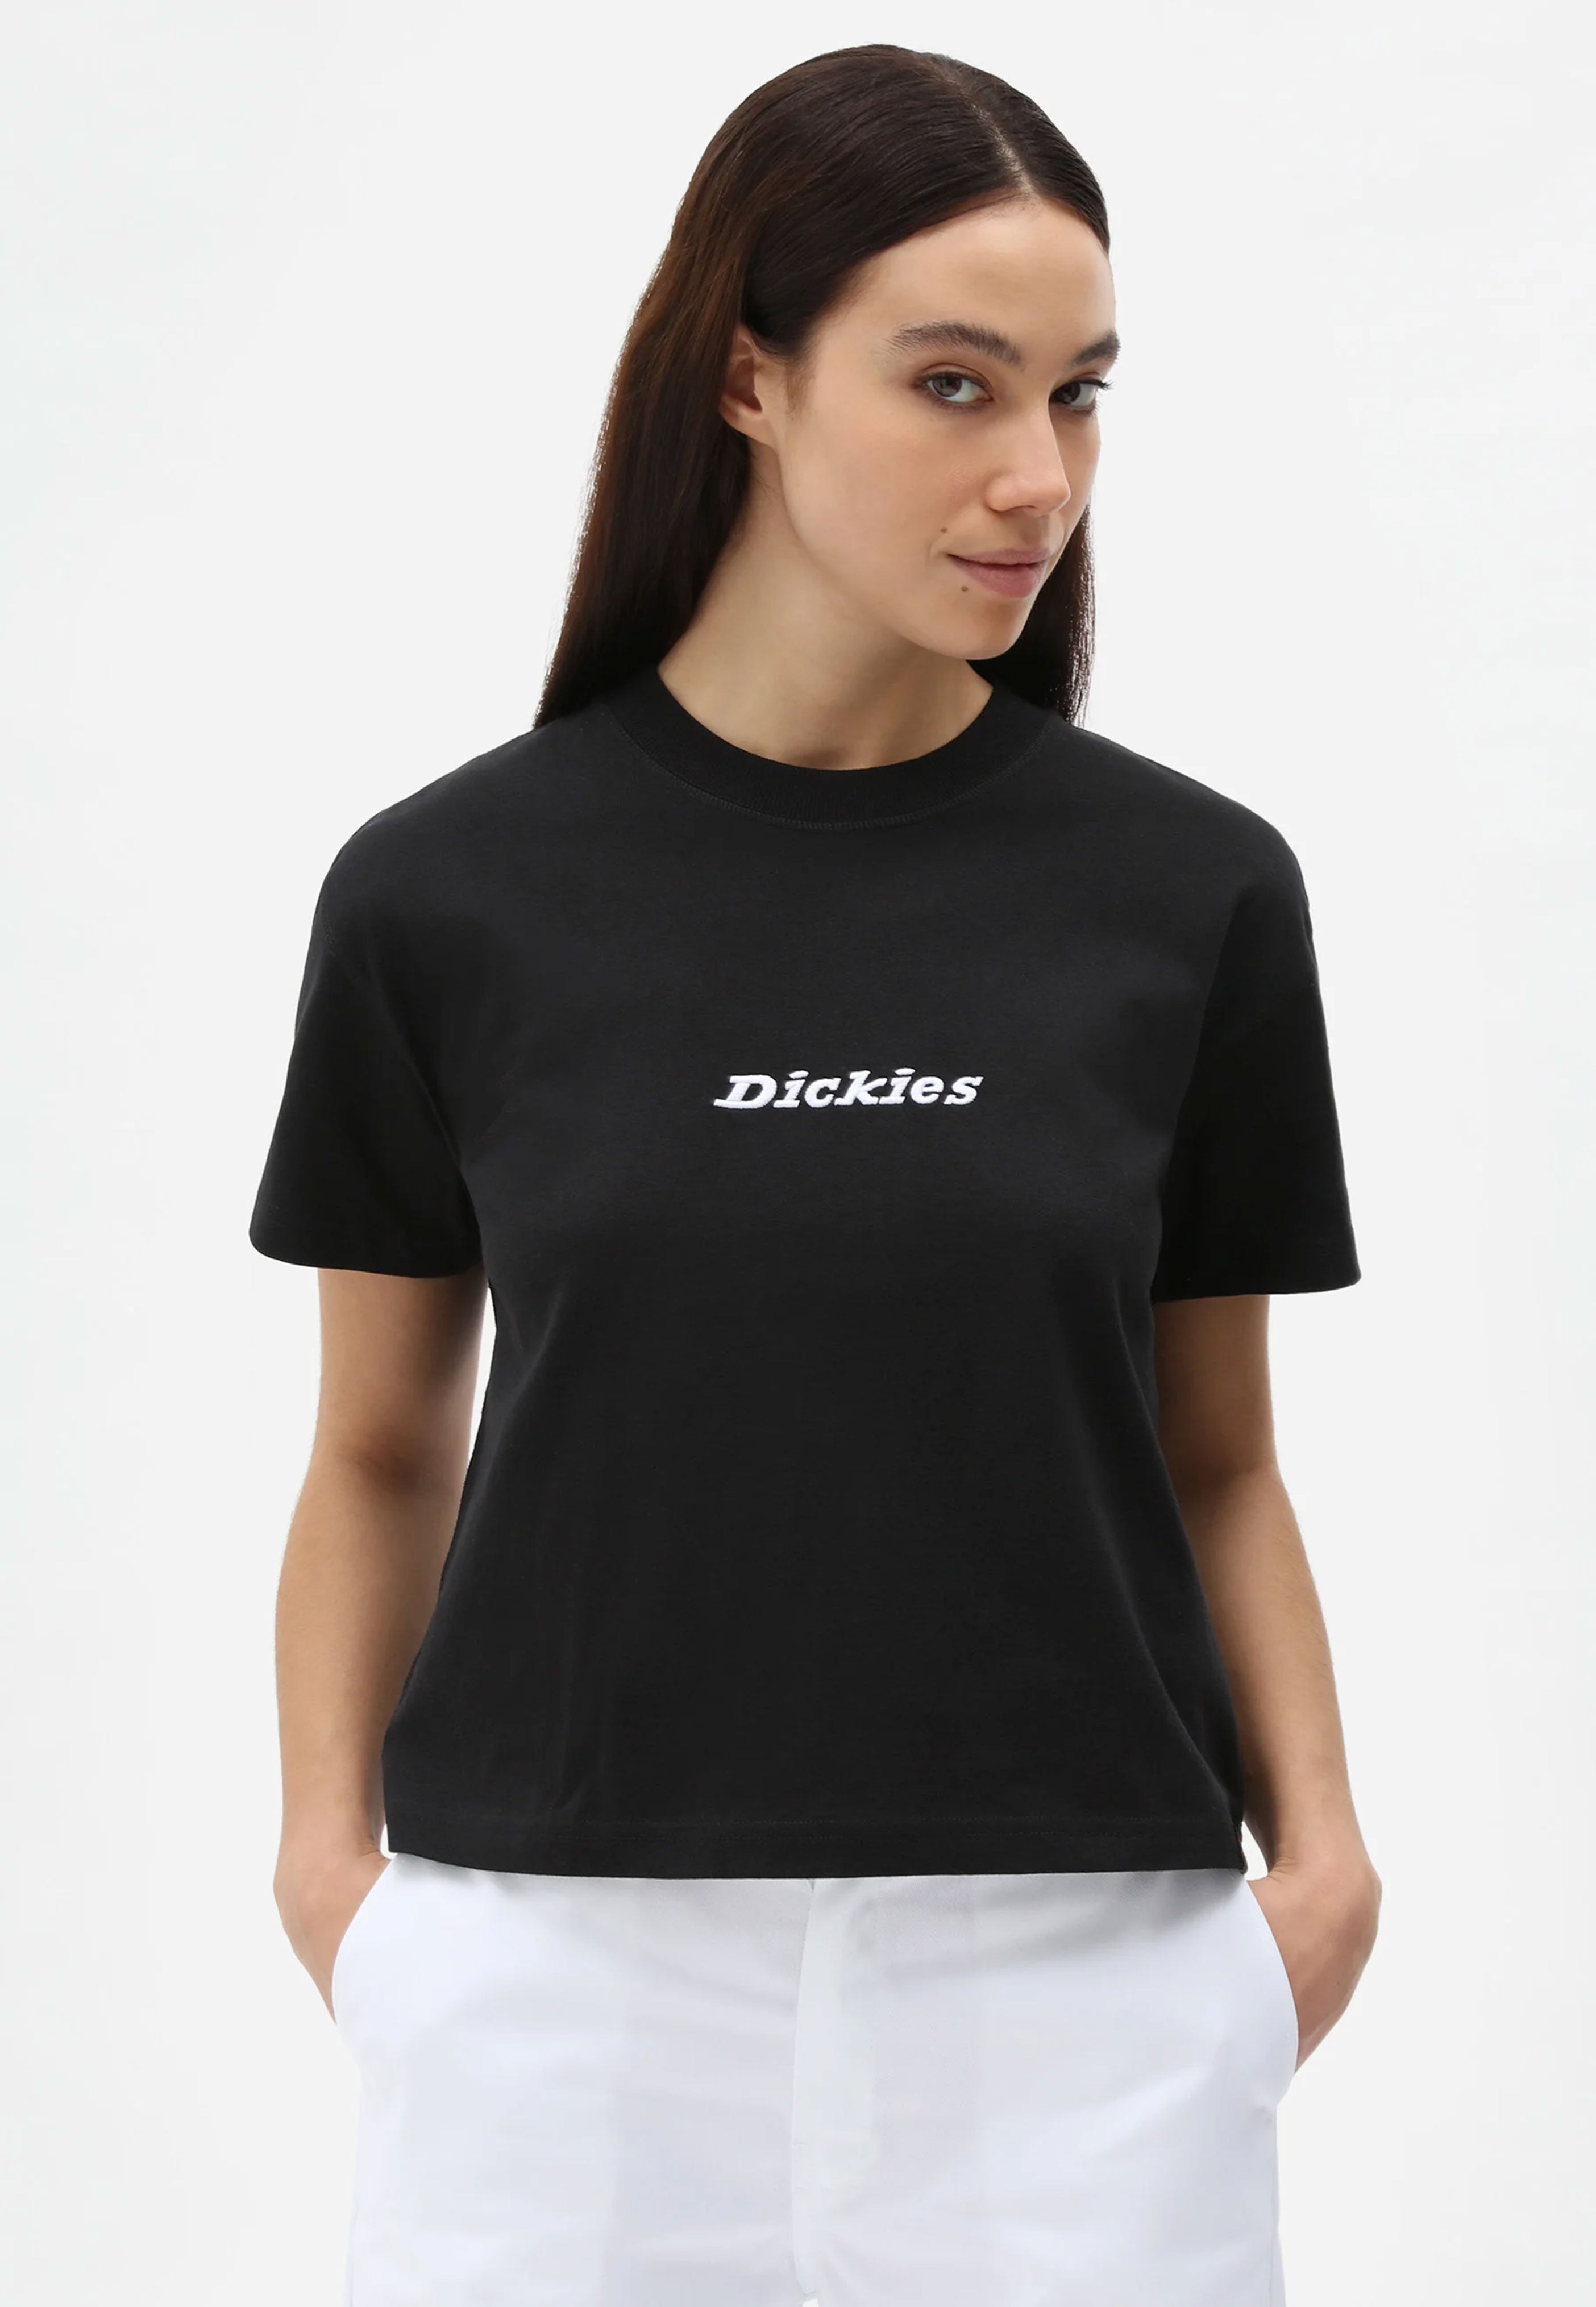 Dickies - W Loretto Black - T-Shirt